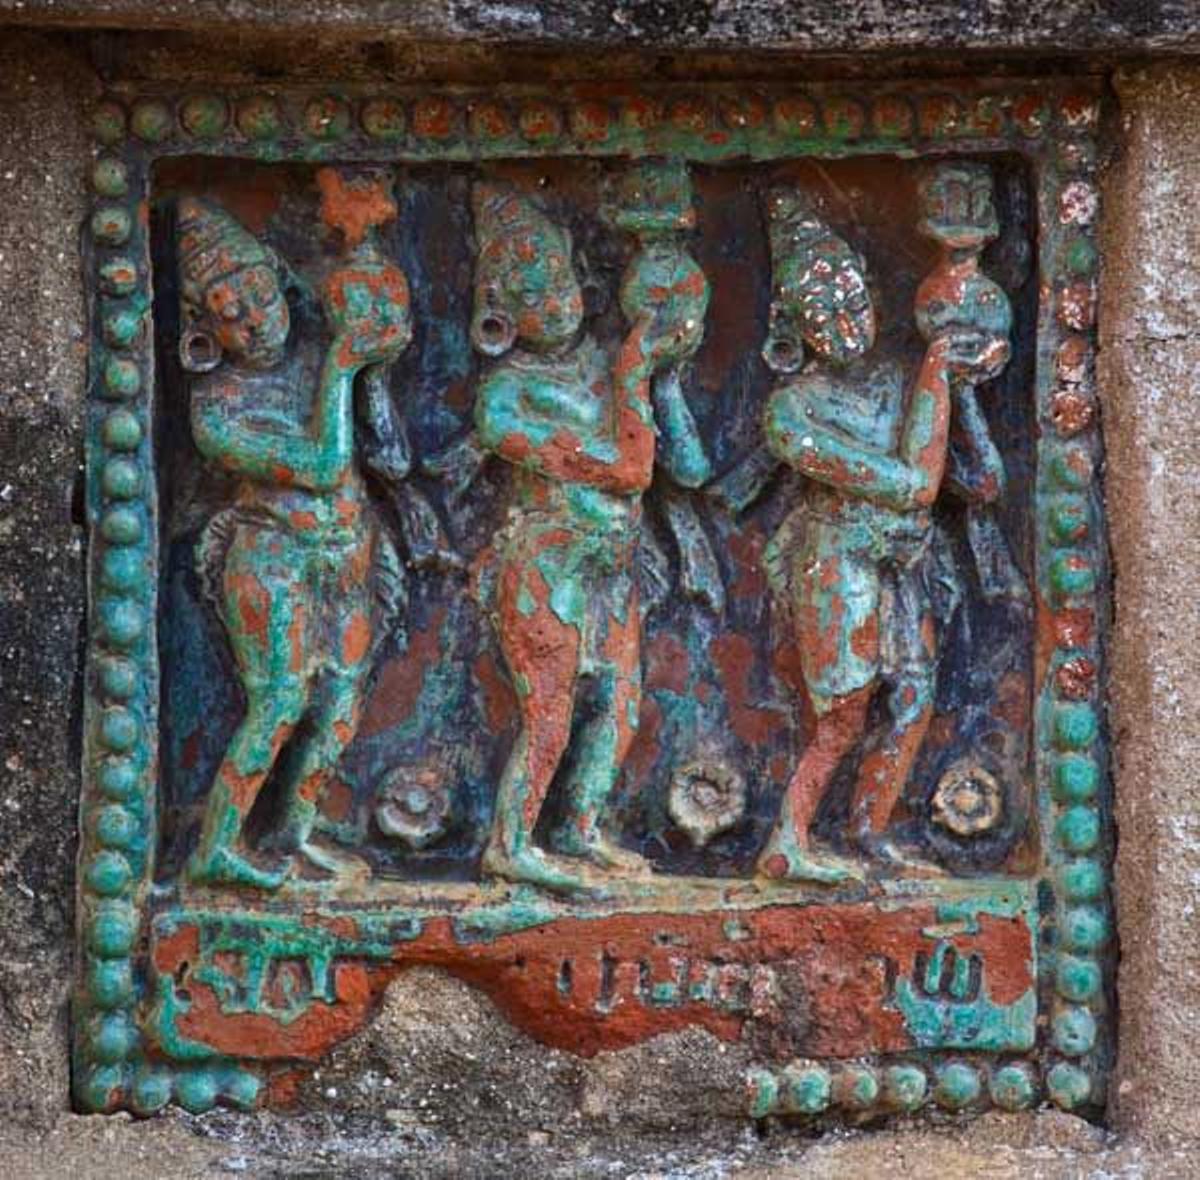 Detalle decorativo del Templo Ananda, construido por el Rey Kyanzittha sobre el año 1100 en Bagan.